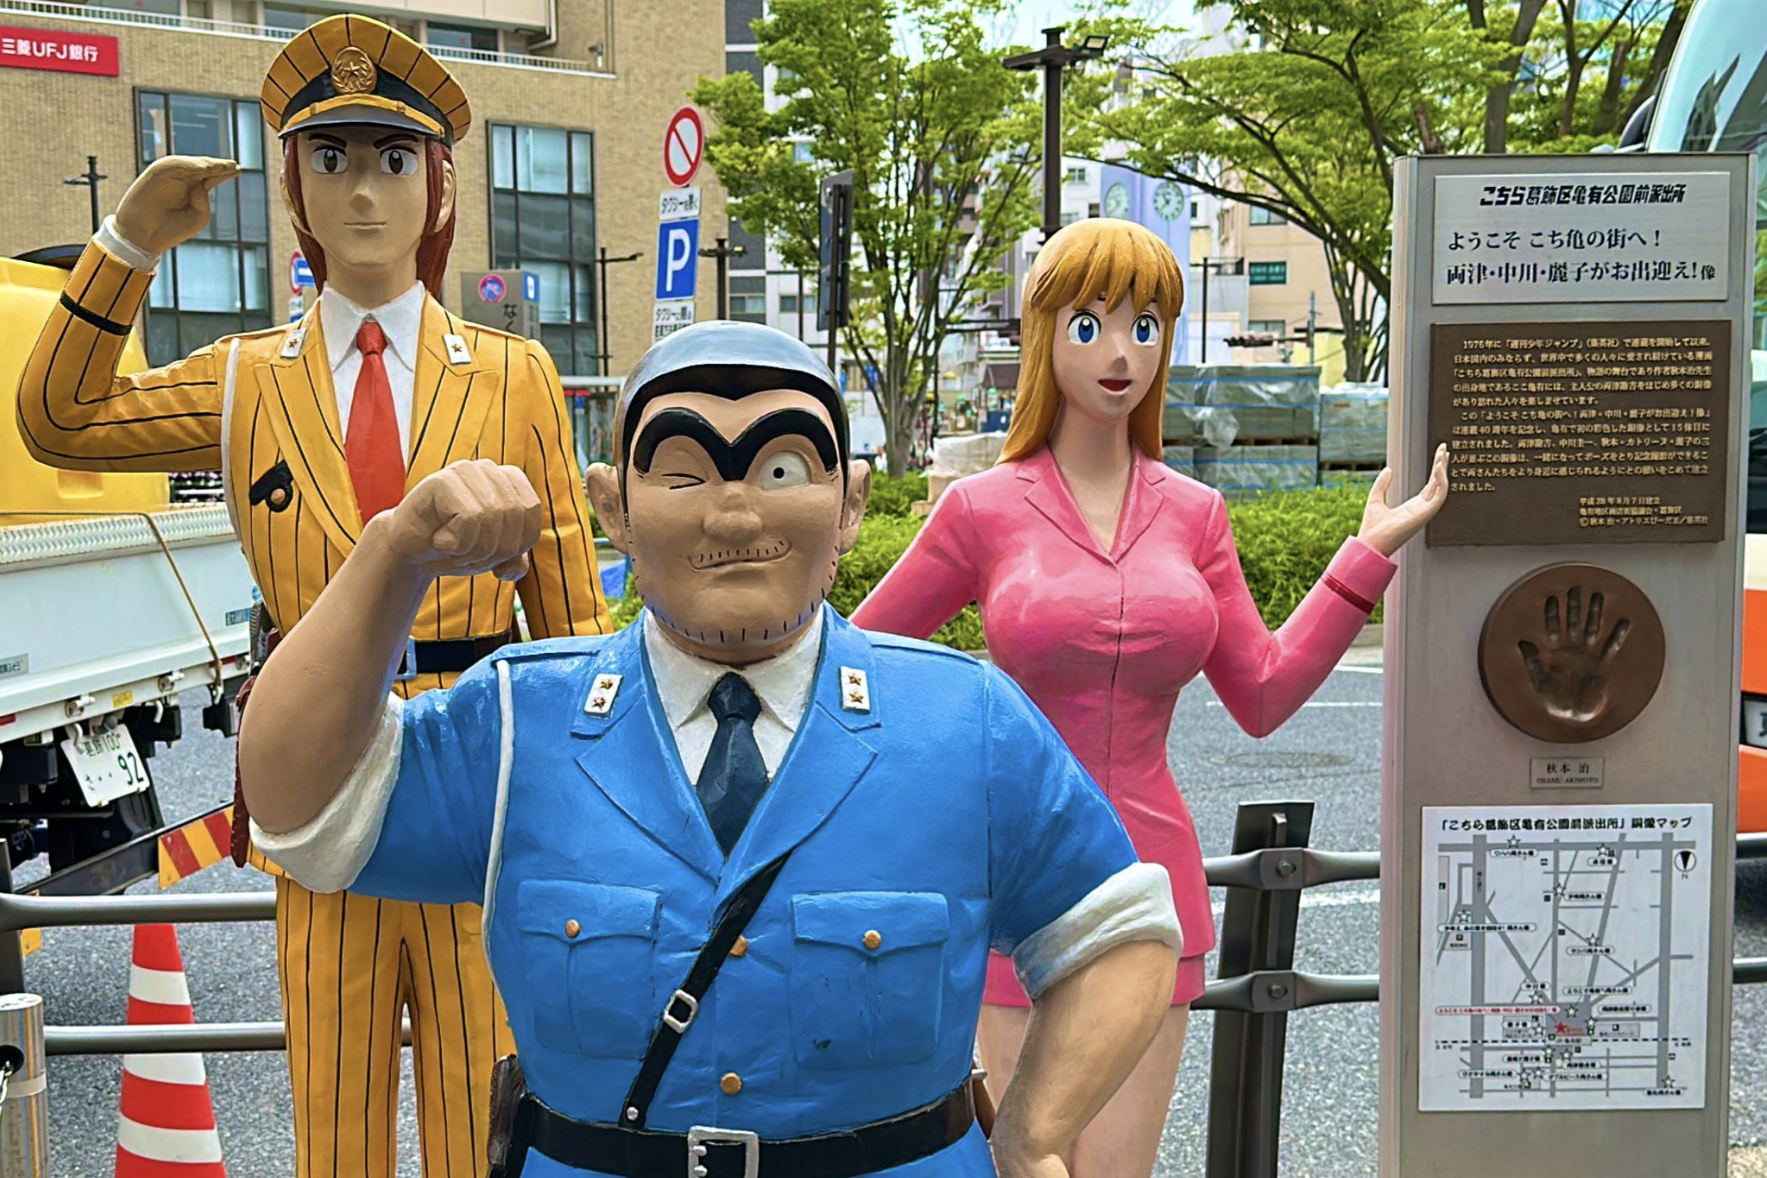 亀有駅南口にある両さんと中川、麗子の3人の像